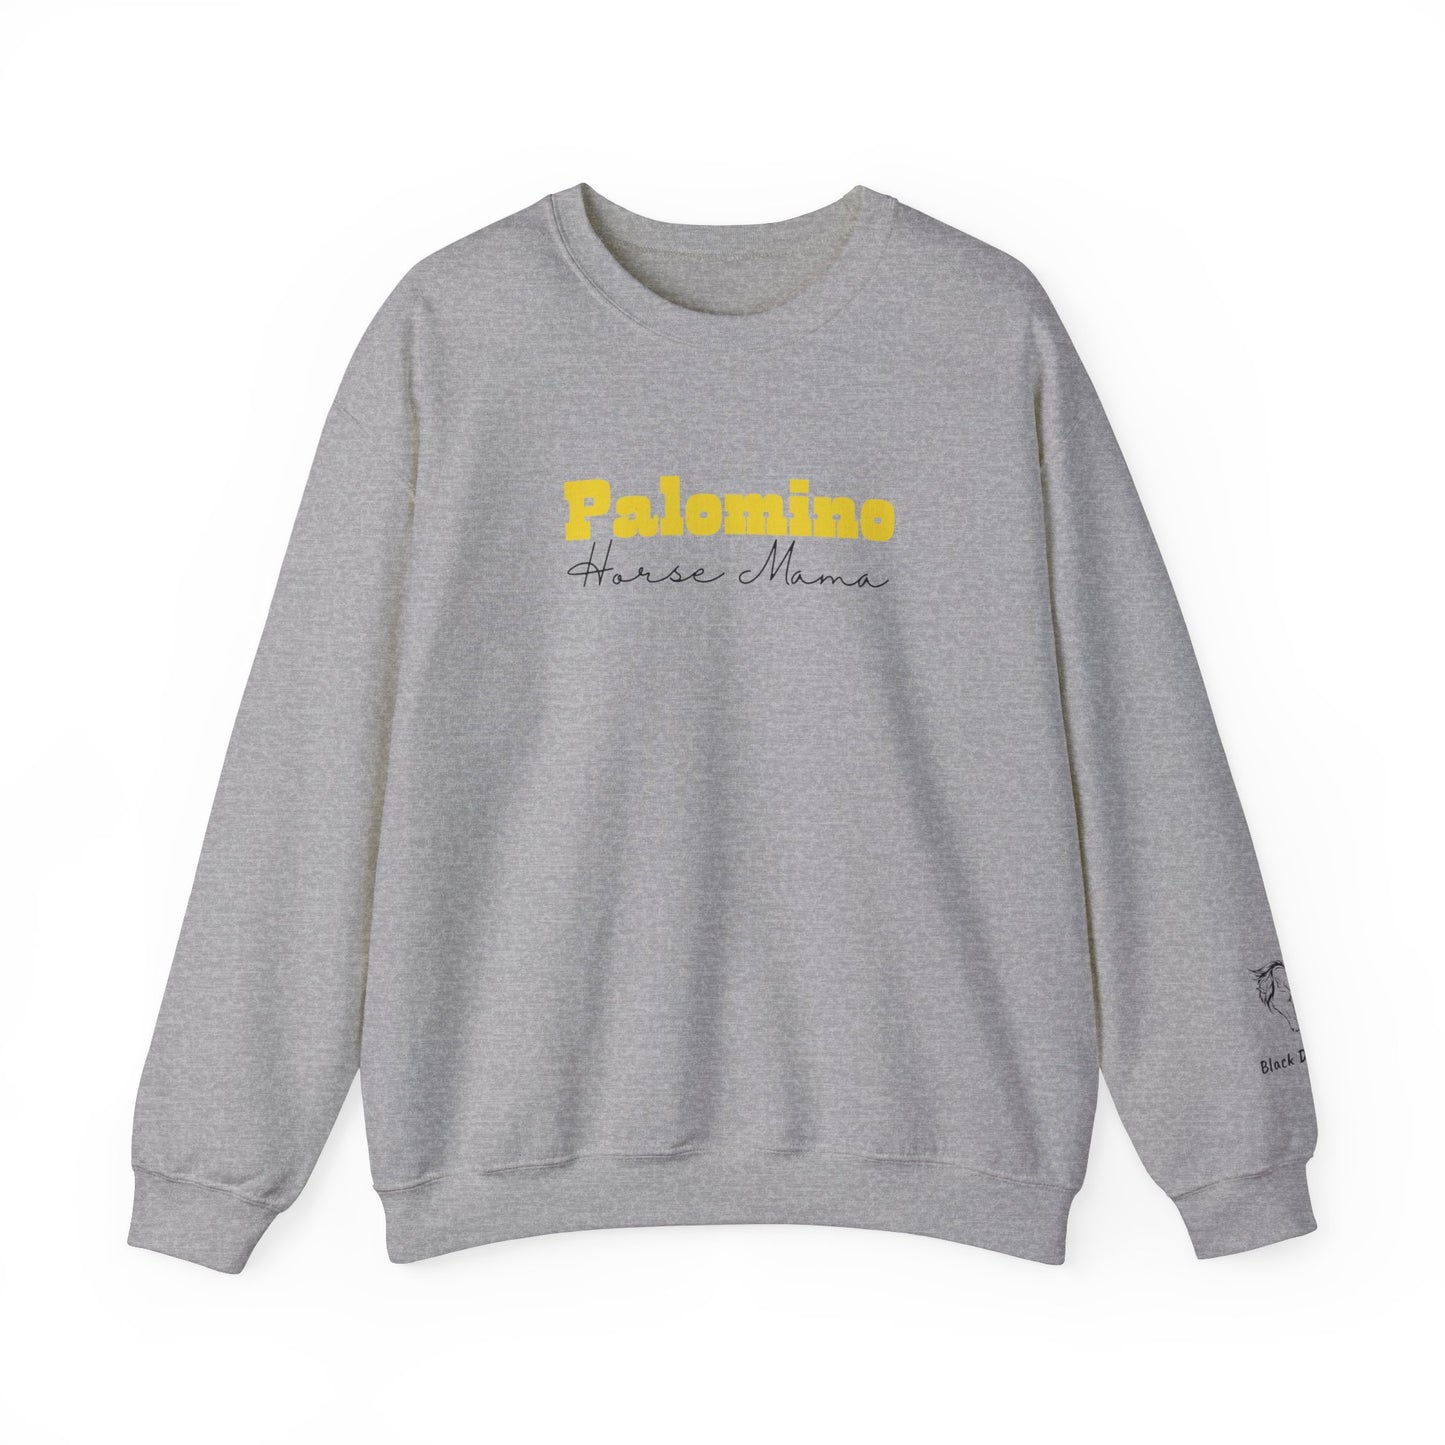 Personalized Palomino Horse Mama Sweatshirt with Horse Name on Sleeve